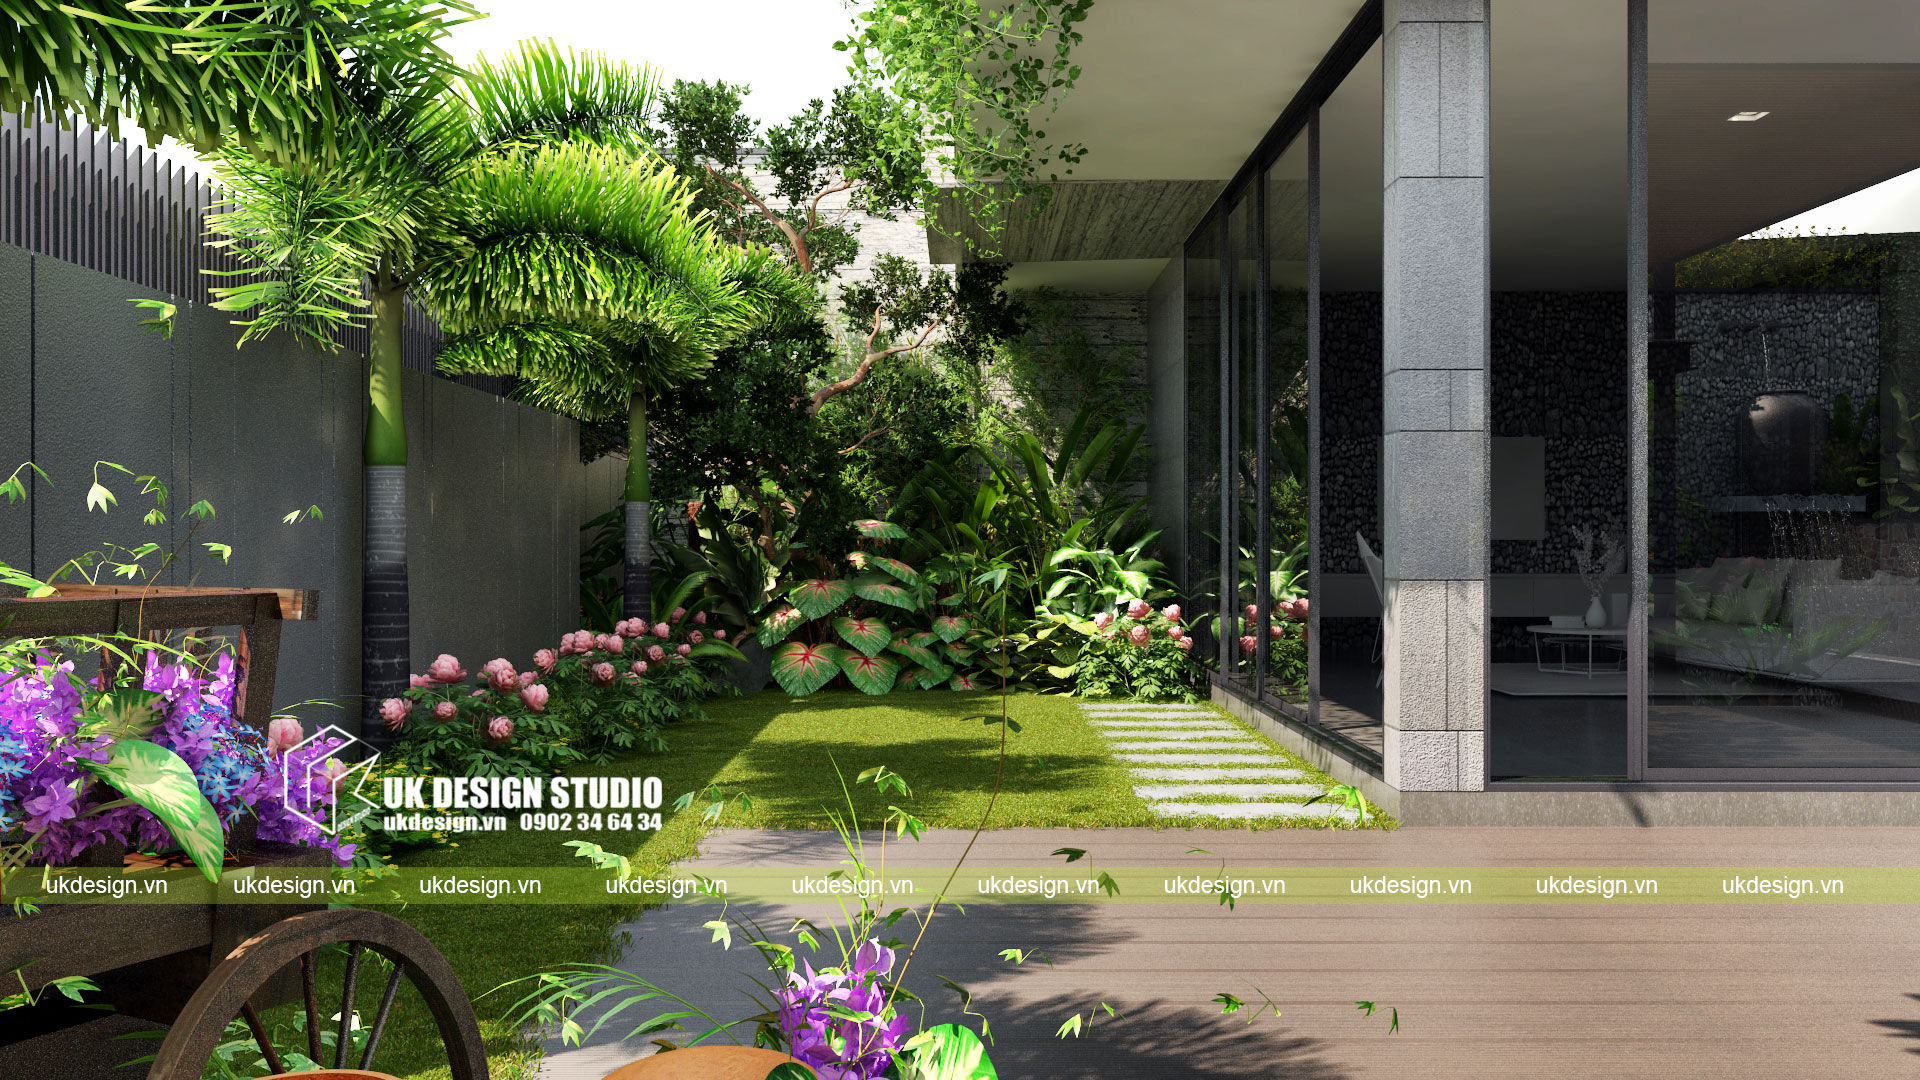 Biệt thự sân vườn, UK DESIGN STUDIO - KIẾN TRÚC UK UK DESIGN STUDIO - KIẾN TRÚC UK Casas modernas: Ideas, diseños y decoración